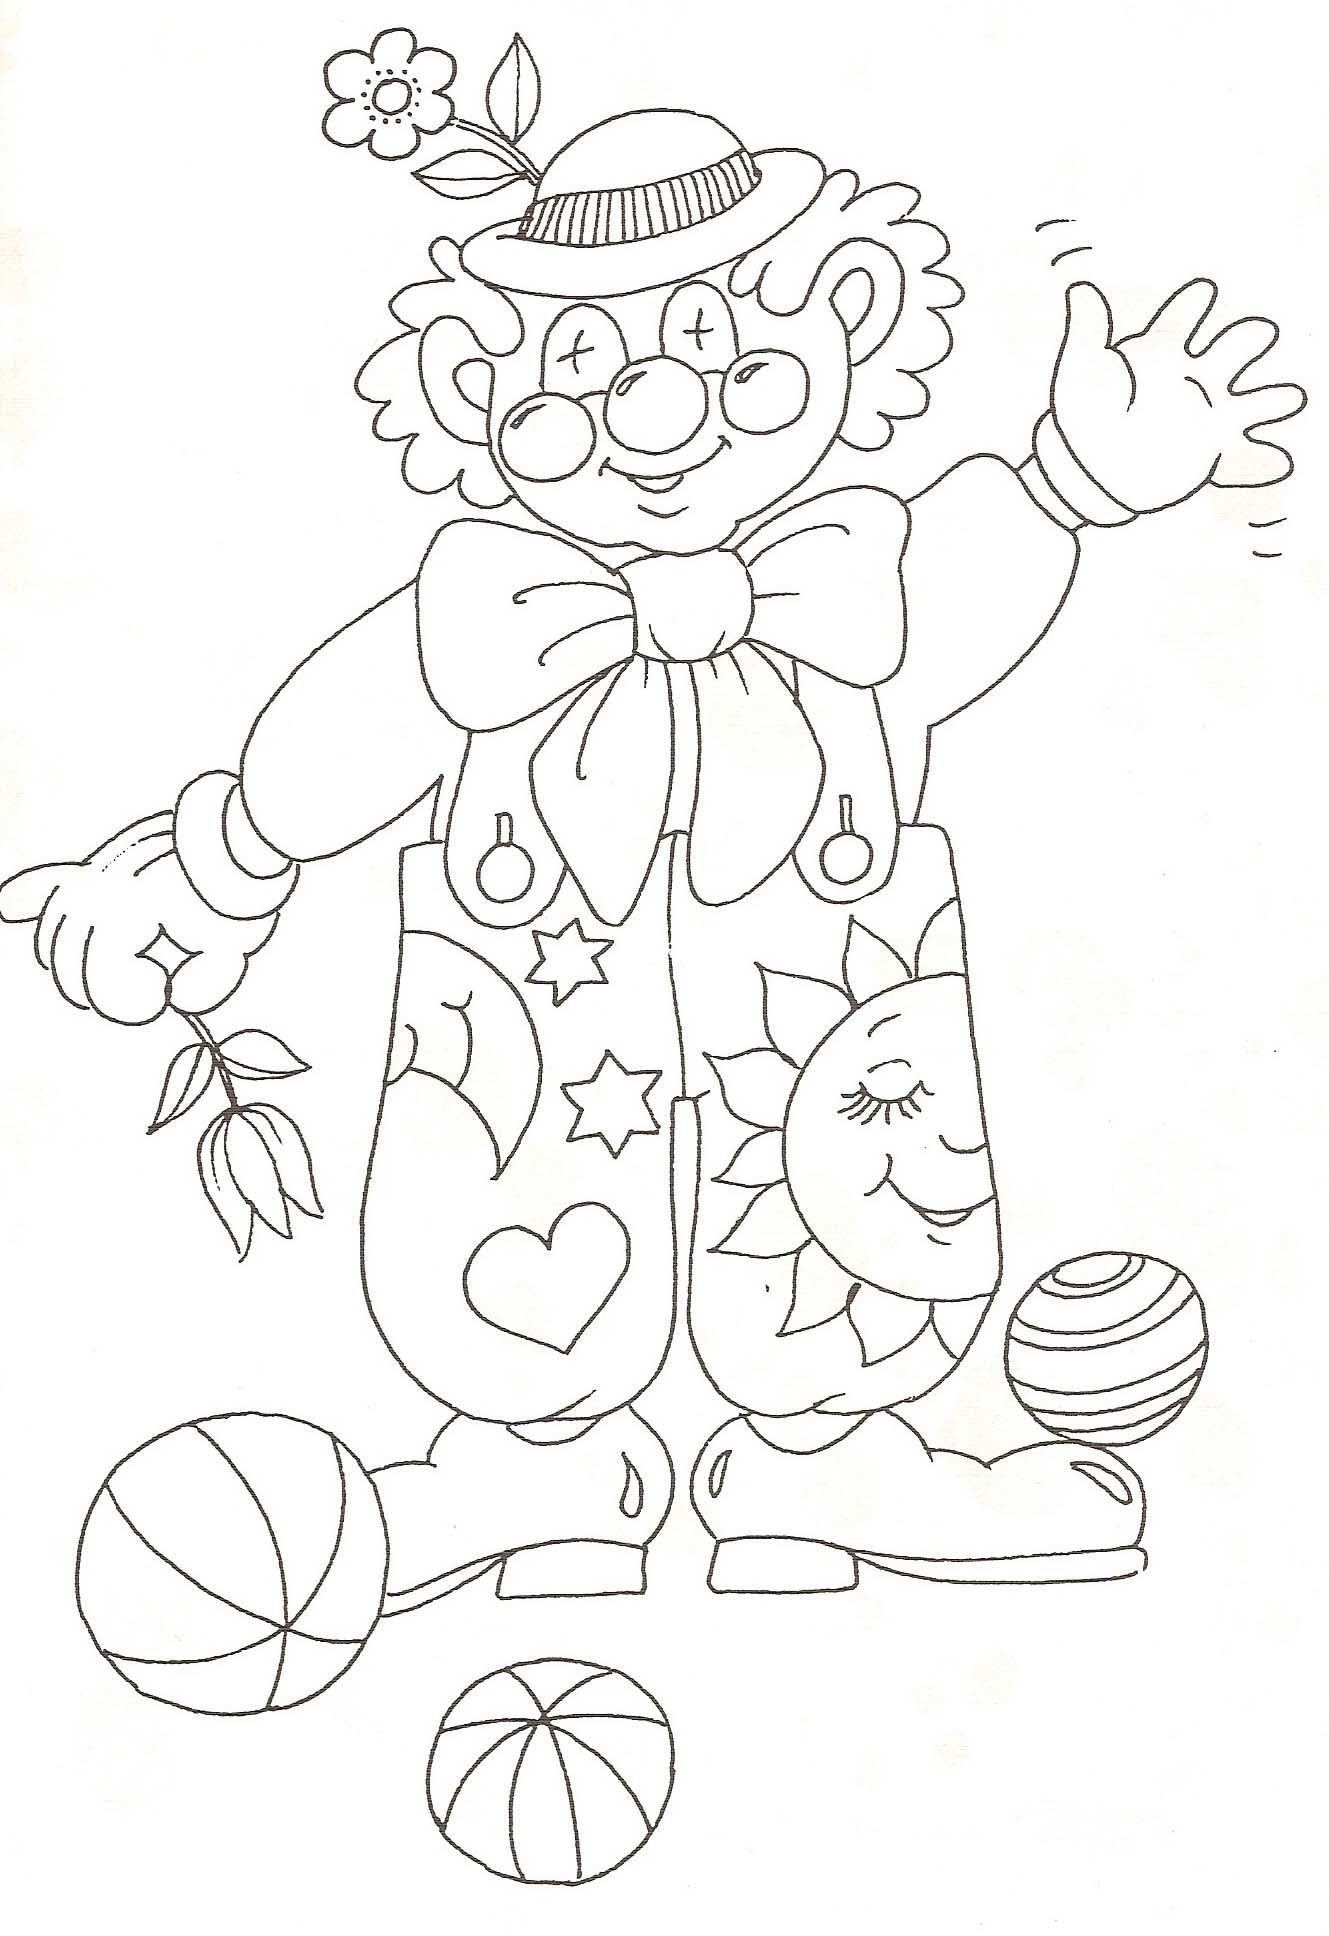 Клоун раскраска для детей 4 5 лет. Клоун раскраска. Клоун раскраска для детей. Клоун для раскрашивания детям. Веселый клоун раскраска.